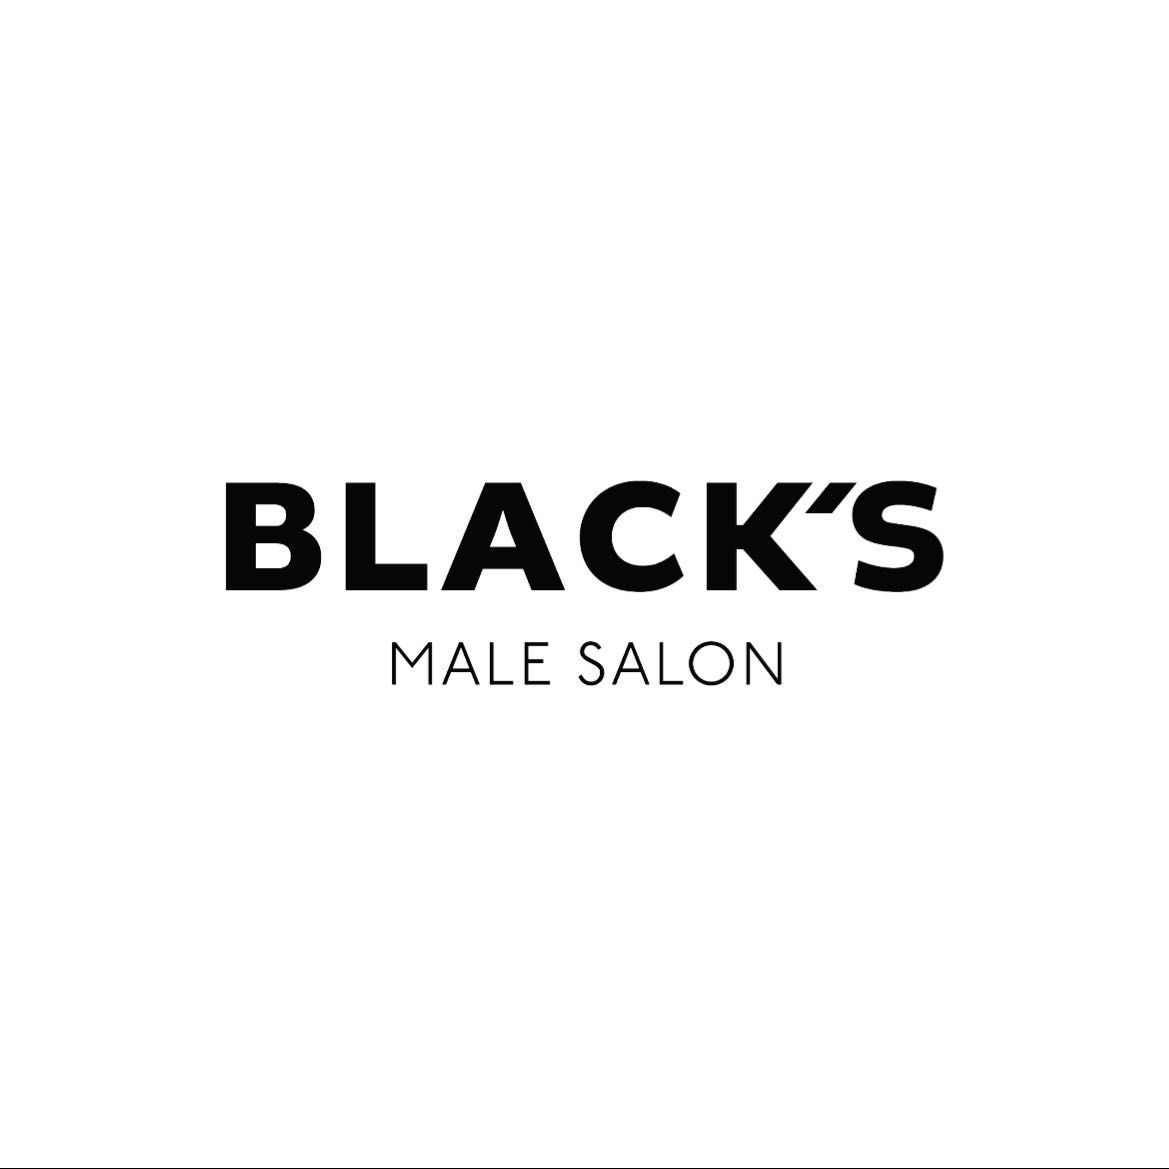 Blacks Male Salon - Polwarth, 12a Polwarth Cresent, EH11 1HW, Edinburgh